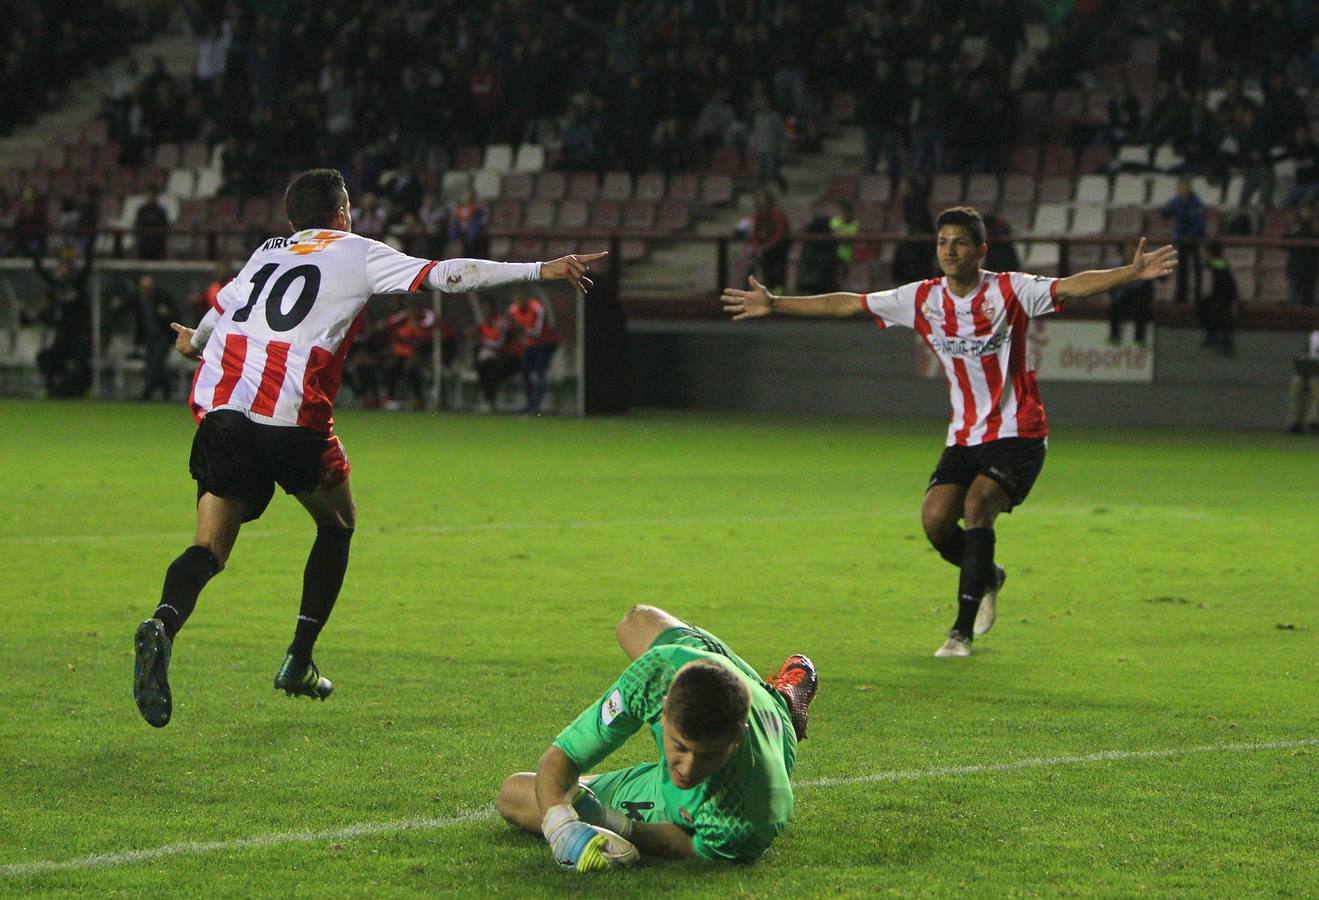 La UD Logroñés ganó en un buen partido en Las Gaunas a la Real Sociedad B por 3-1